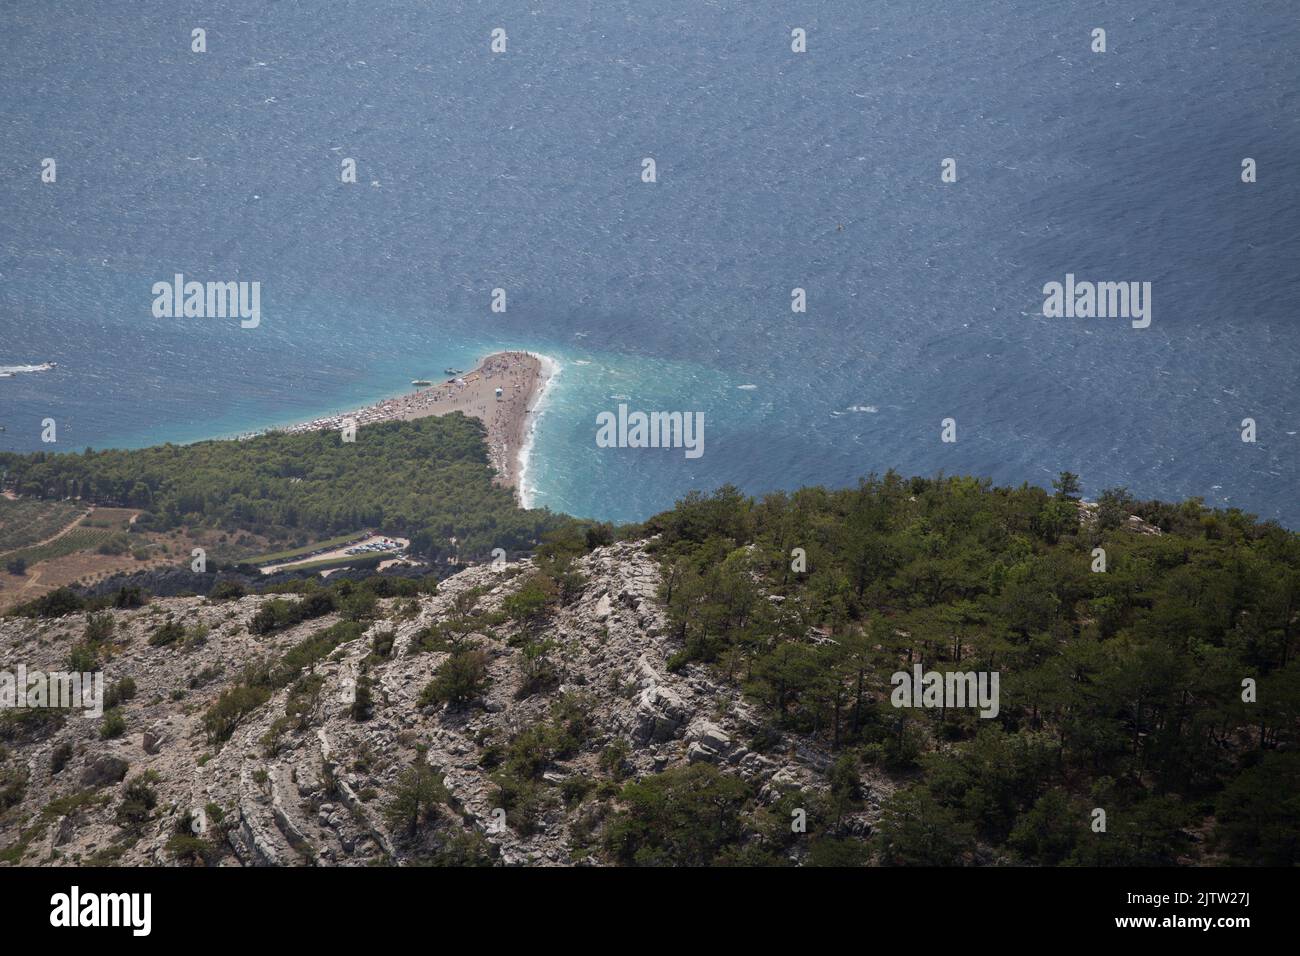 Veduta aerea della spiaggia di Zlatni Rat (Corno d'Oro) da Vidova Gora, la famosa spiaggia croata con acque turchesi e un paesaggio selvaggio circostante Foto Stock